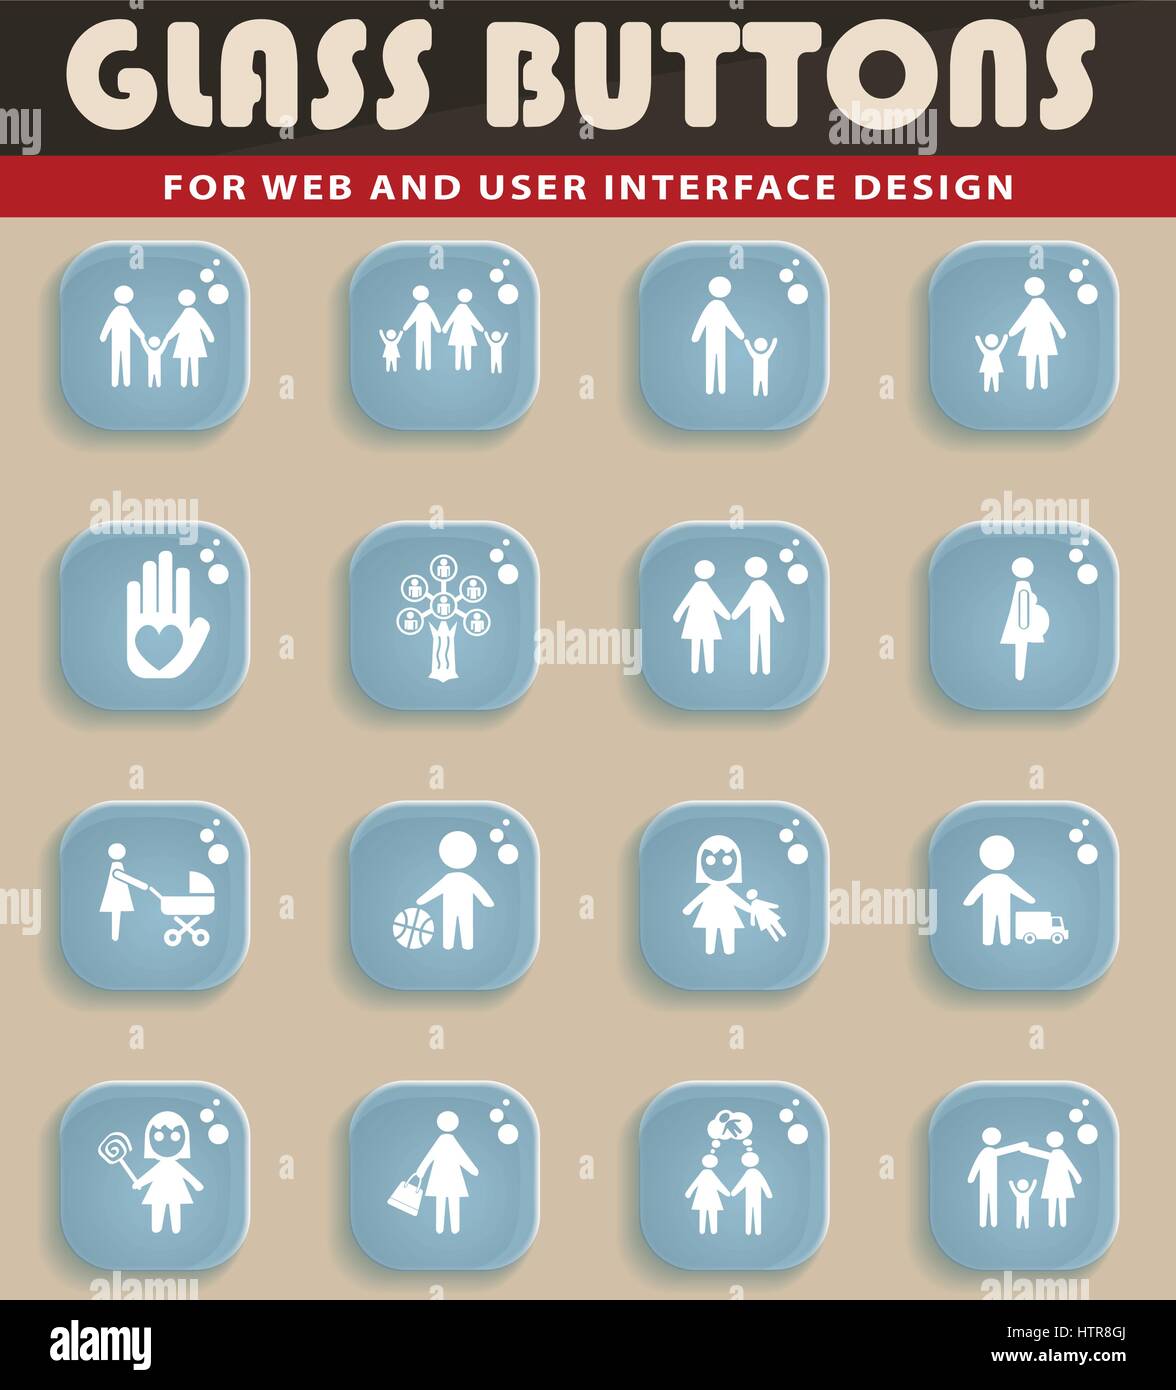 Site web de la famille des icônes pour la conception d'interface utilisateur Illustration de Vecteur